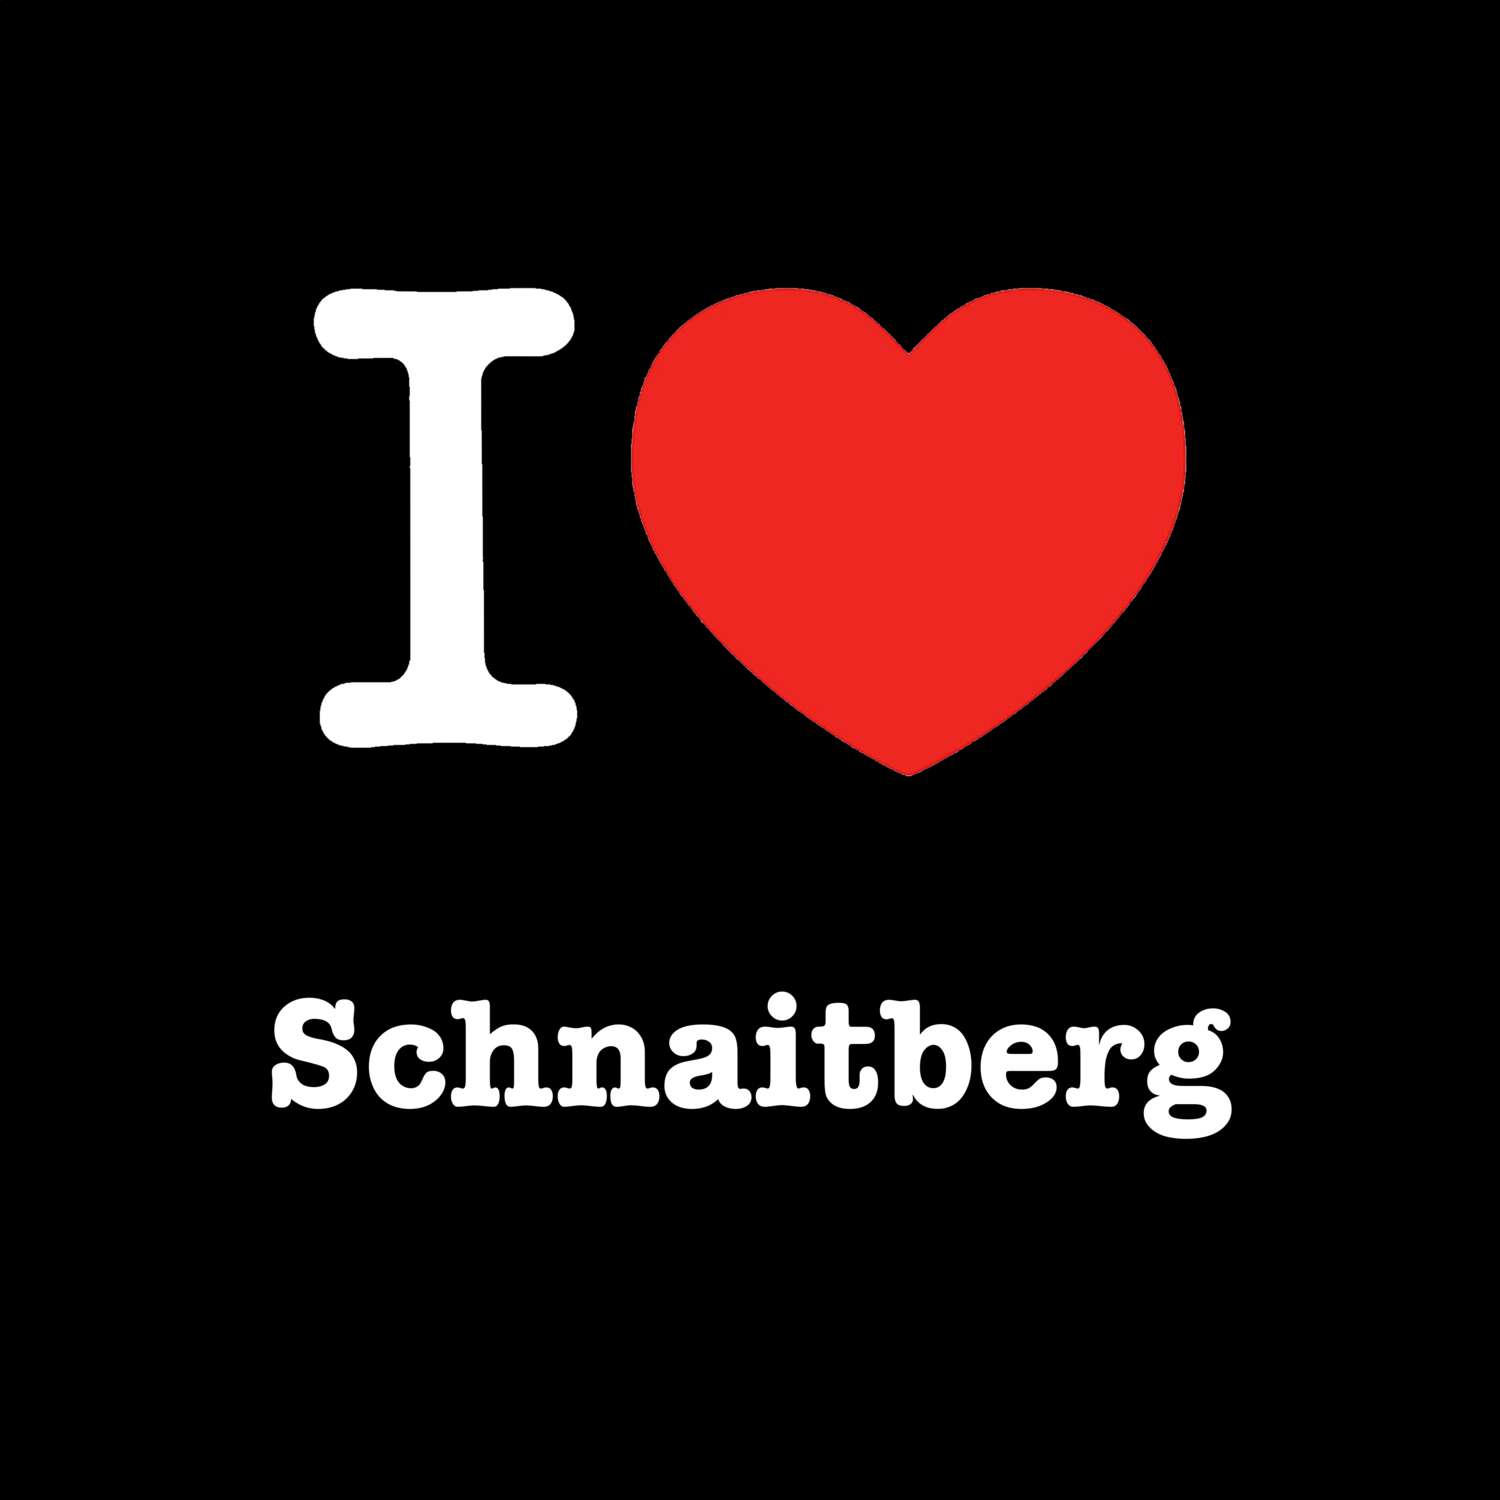 Schnaitberg T-Shirt »I love«